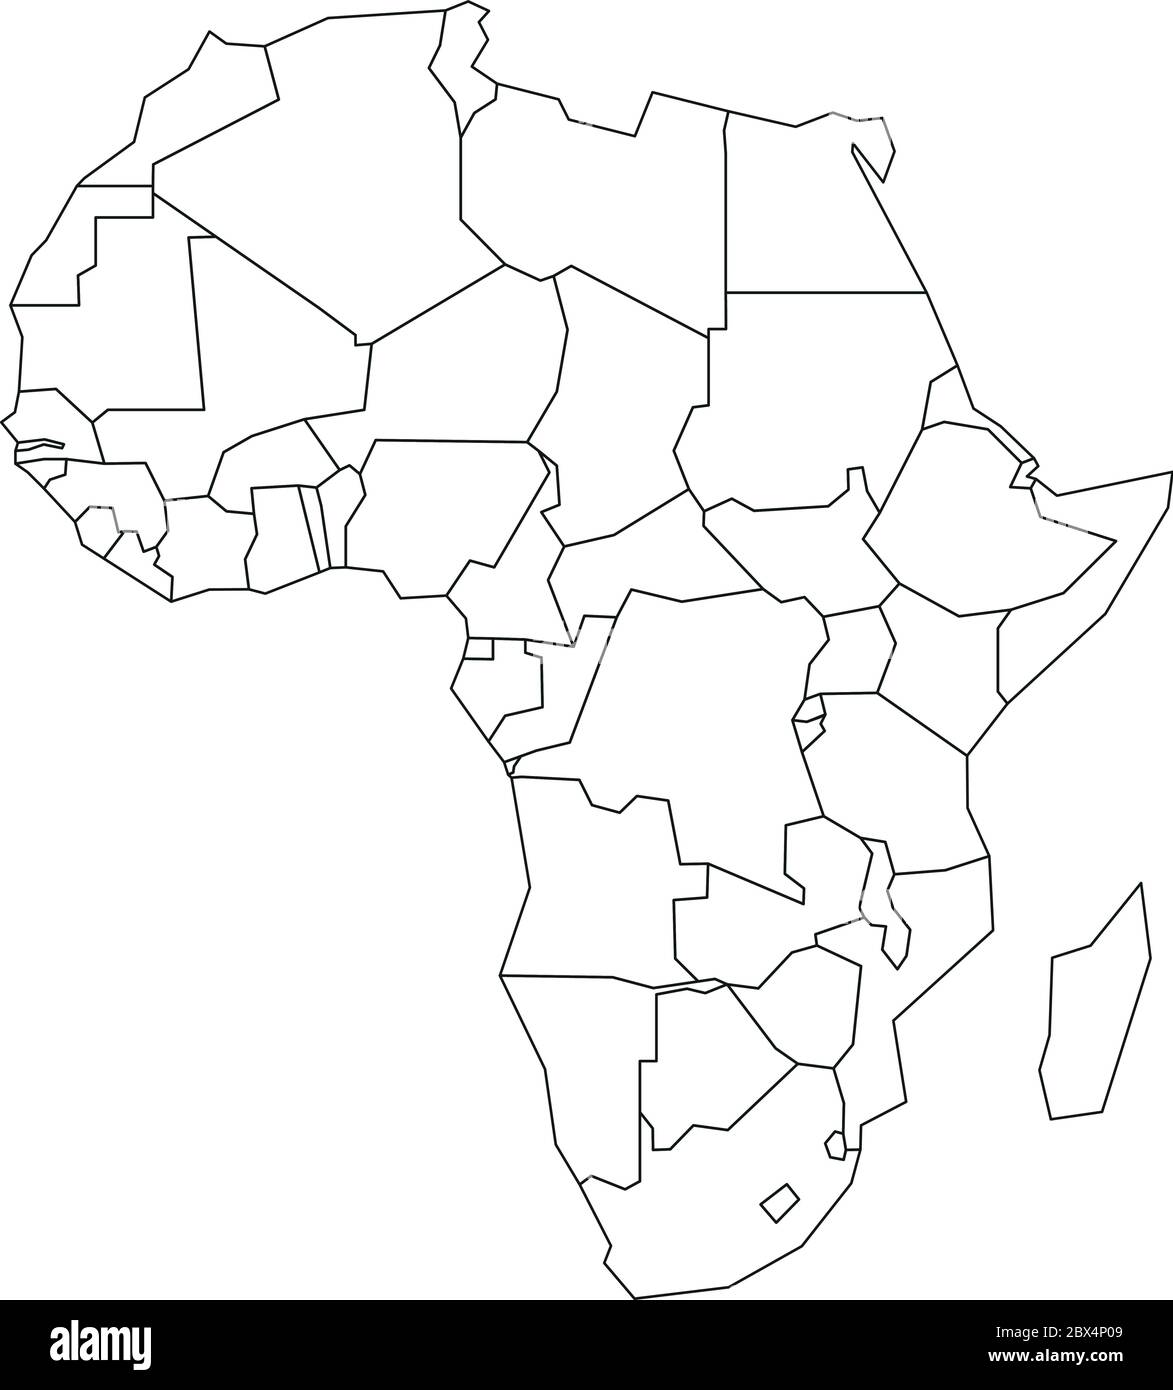 Politische Karte Von Afrika Vereinfachte Darstellung Des Schwarzen Drahtglamtes Vektorgrafik 4791